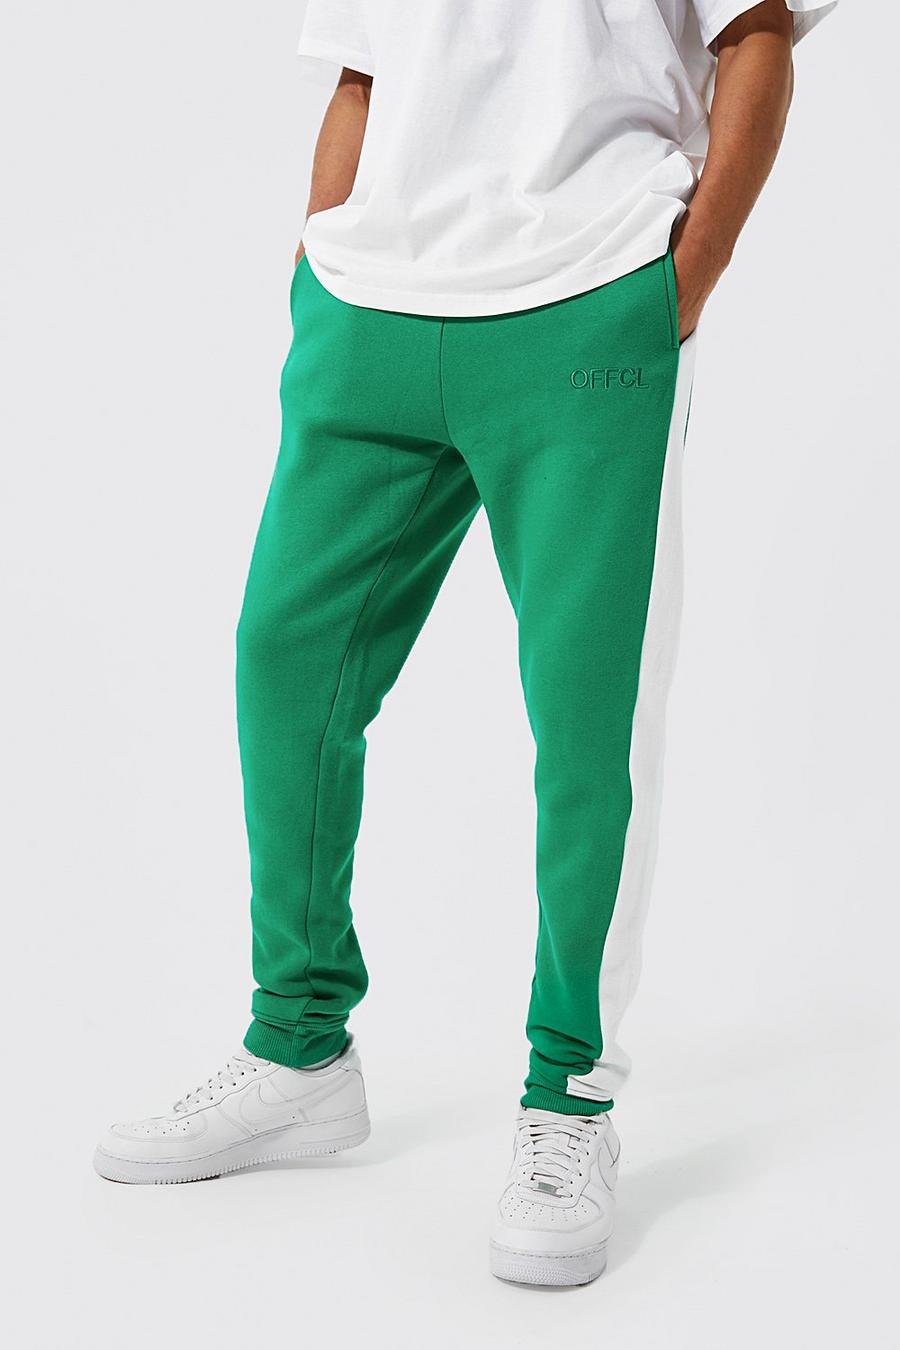 Pantaloni tuta Tall Offcl Skinny Fit con pannelli laterali, Bright green gerde